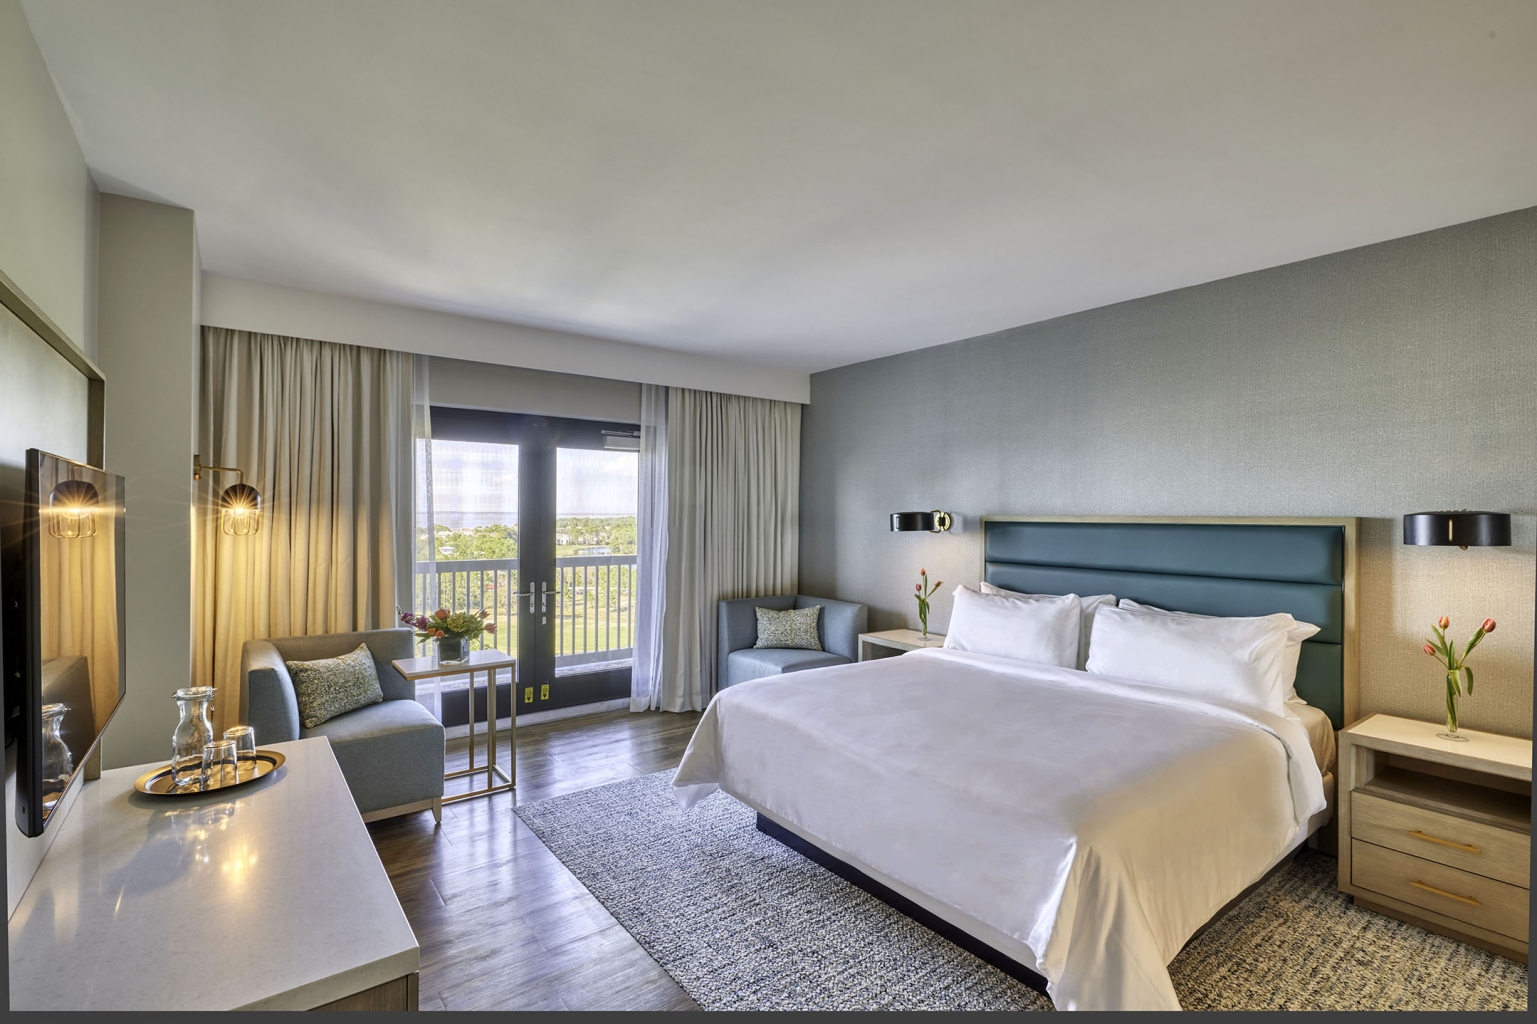 Deluxe balcony. Отель 1000 звезд. Идеальный отель картинки Флорида. Фото Deluxe Room back view Miramar Hotel. Alfresco Phuket 3 Deluxe Twin Room with balcony.